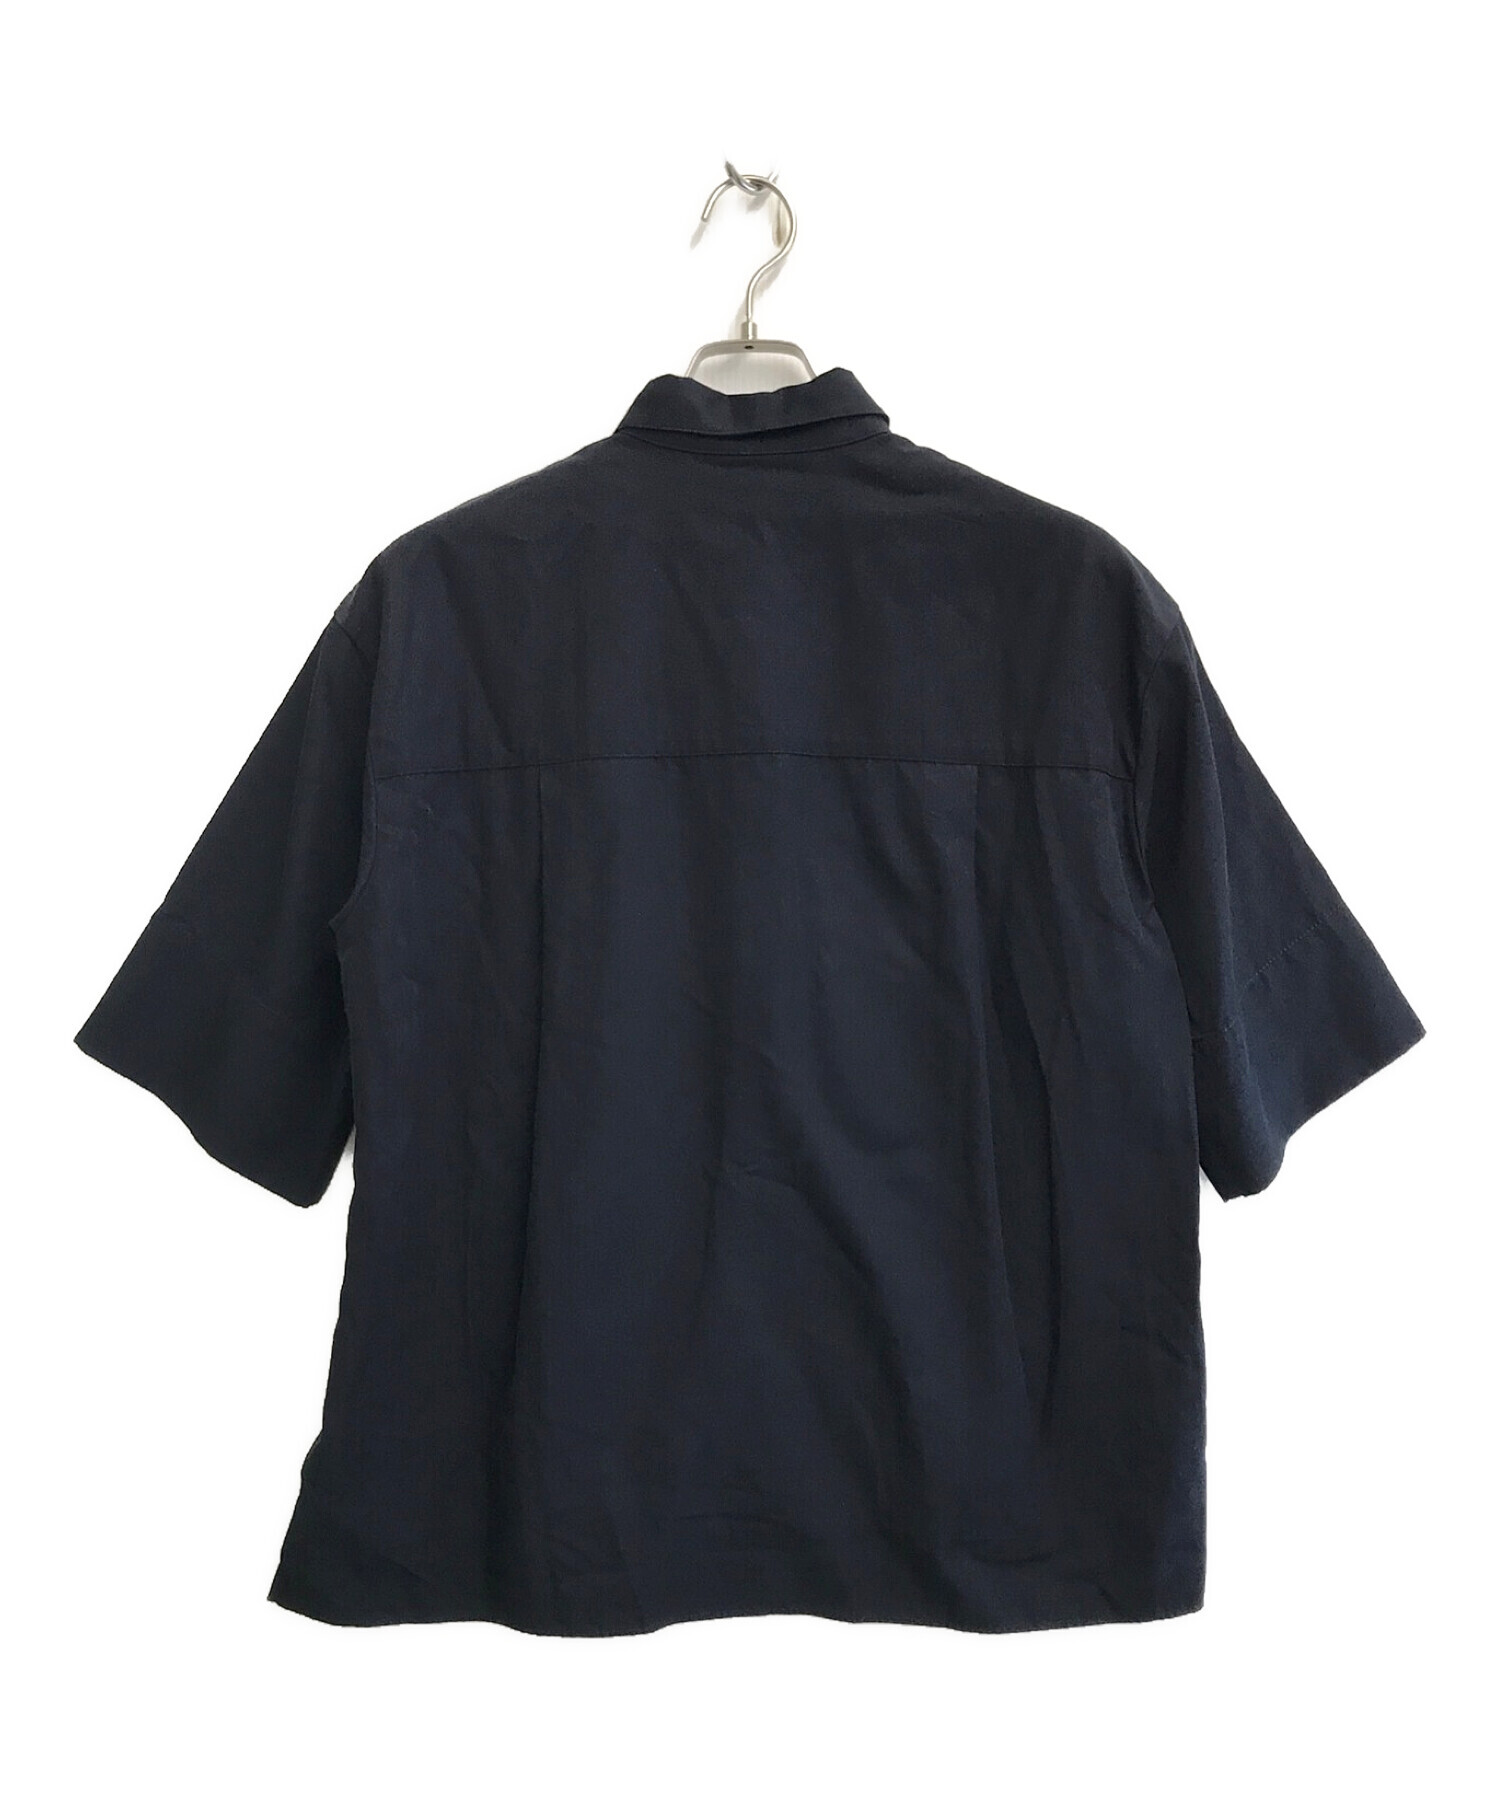 ebure (エブール) 半袖シャツ ネイビー サイズ:SIZE 38